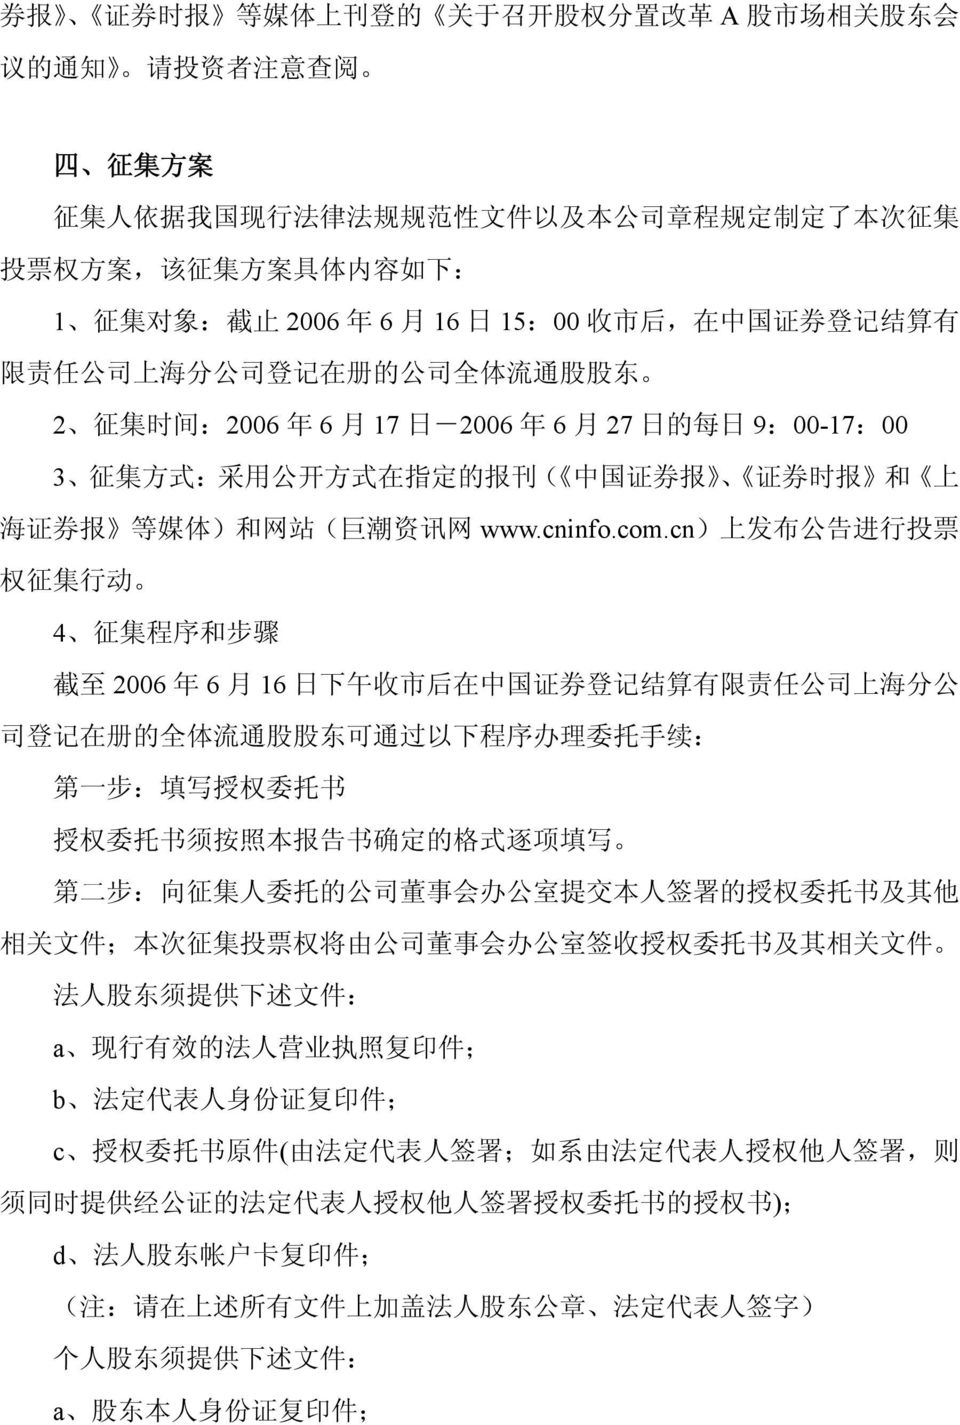 在 指 定 的 报 刊 ( 中 国 证 券 报 证 券 时 报 和 上 海 证 券 报 等 媒 体 ) 和 网 站 ( 巨 潮 资 讯 网 www.cninfo.com.